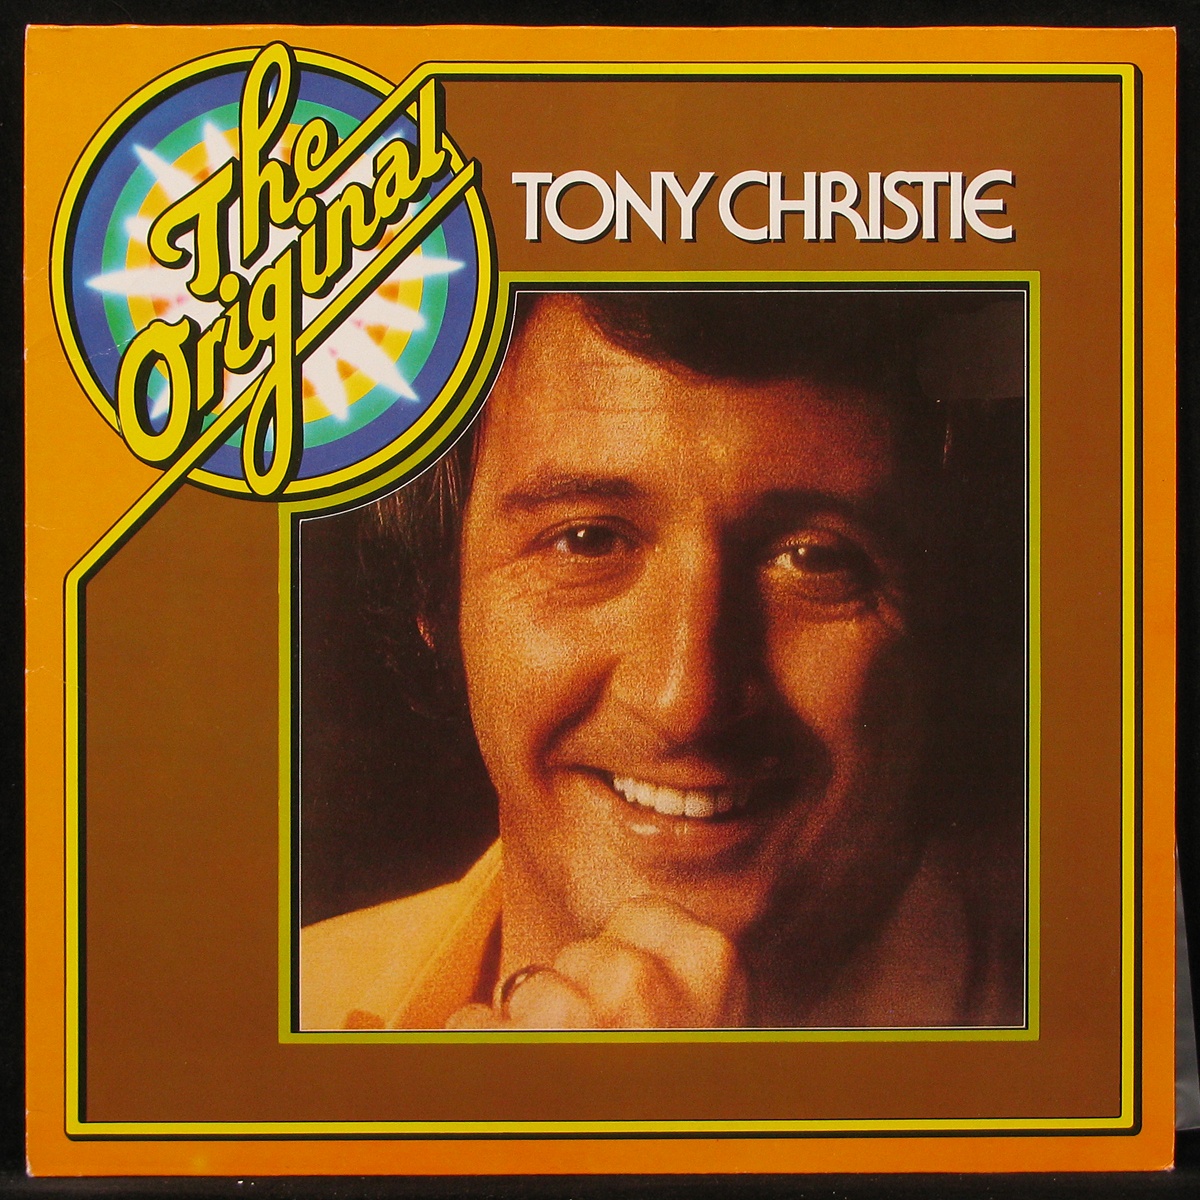 Пластинка Tony Christie - Original Tony Christie, 1980, EX+/NM, арт. 290271